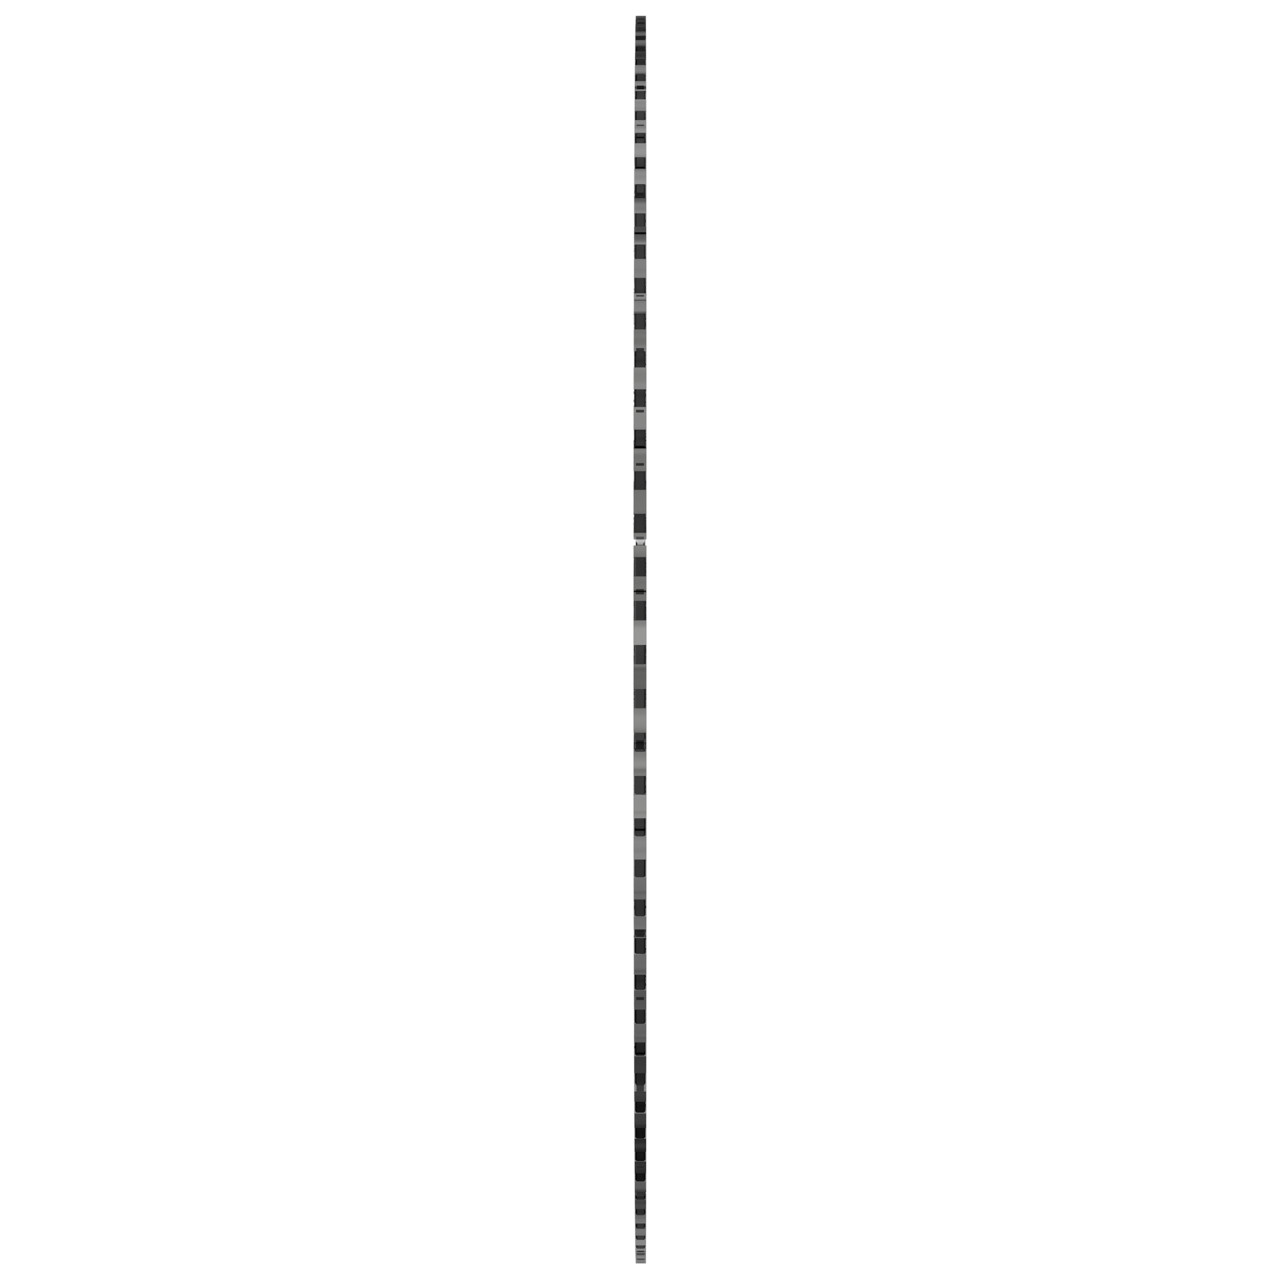 TYROLIT Dachdeckerscheibe DxTxH 230x2,4x22,2, Form: C6R, Art. 103283